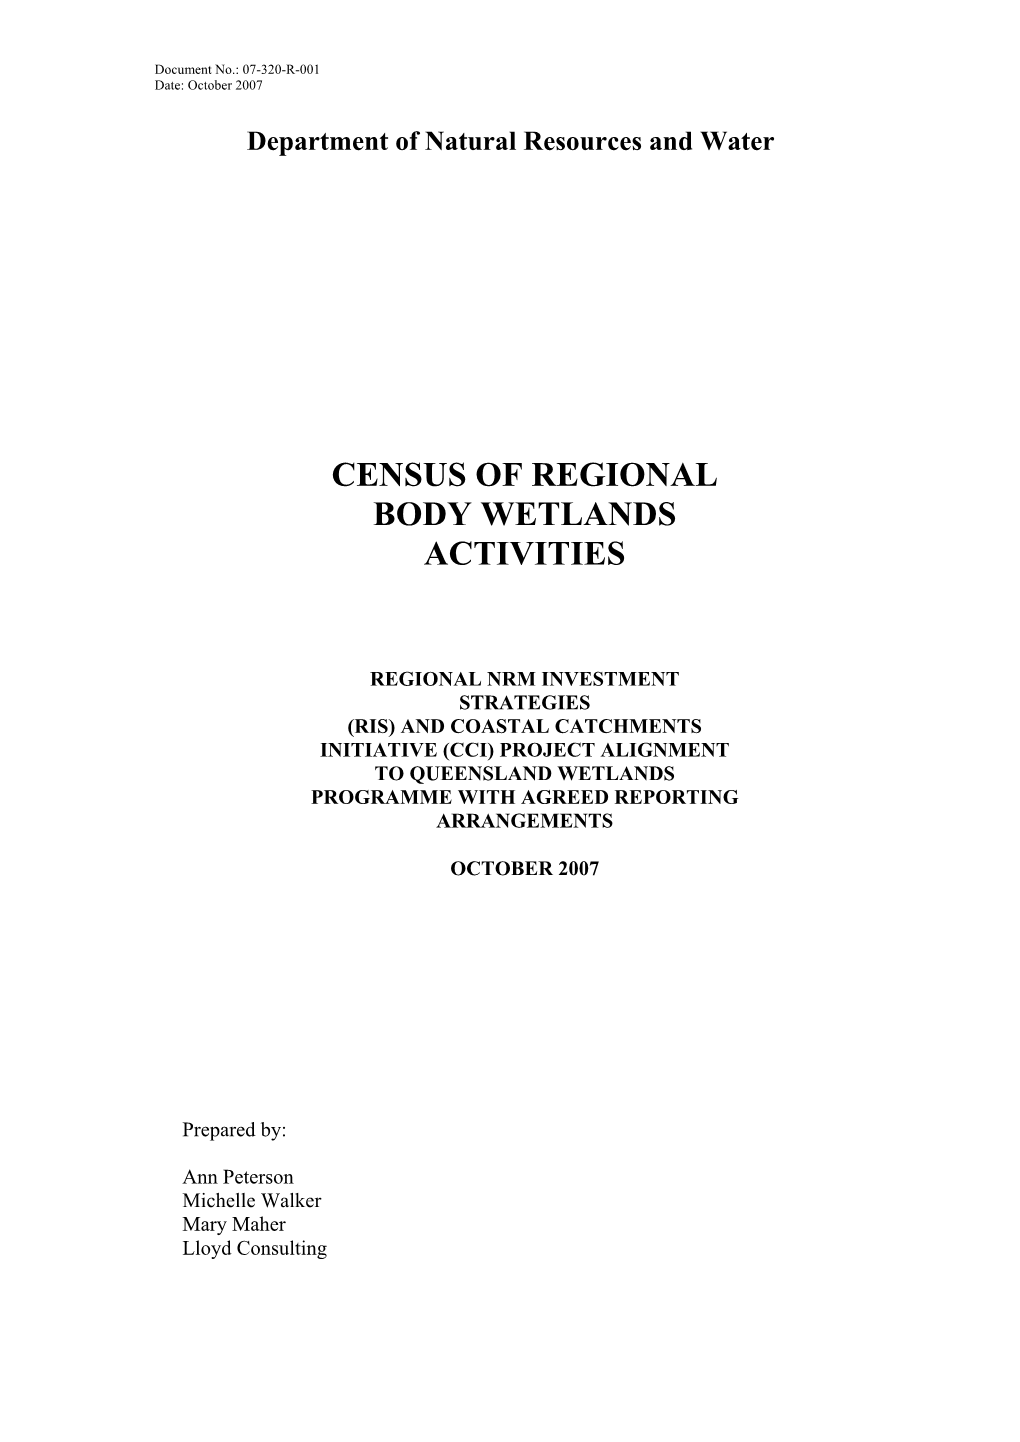 Census of Regional Body Wetlands Activities)